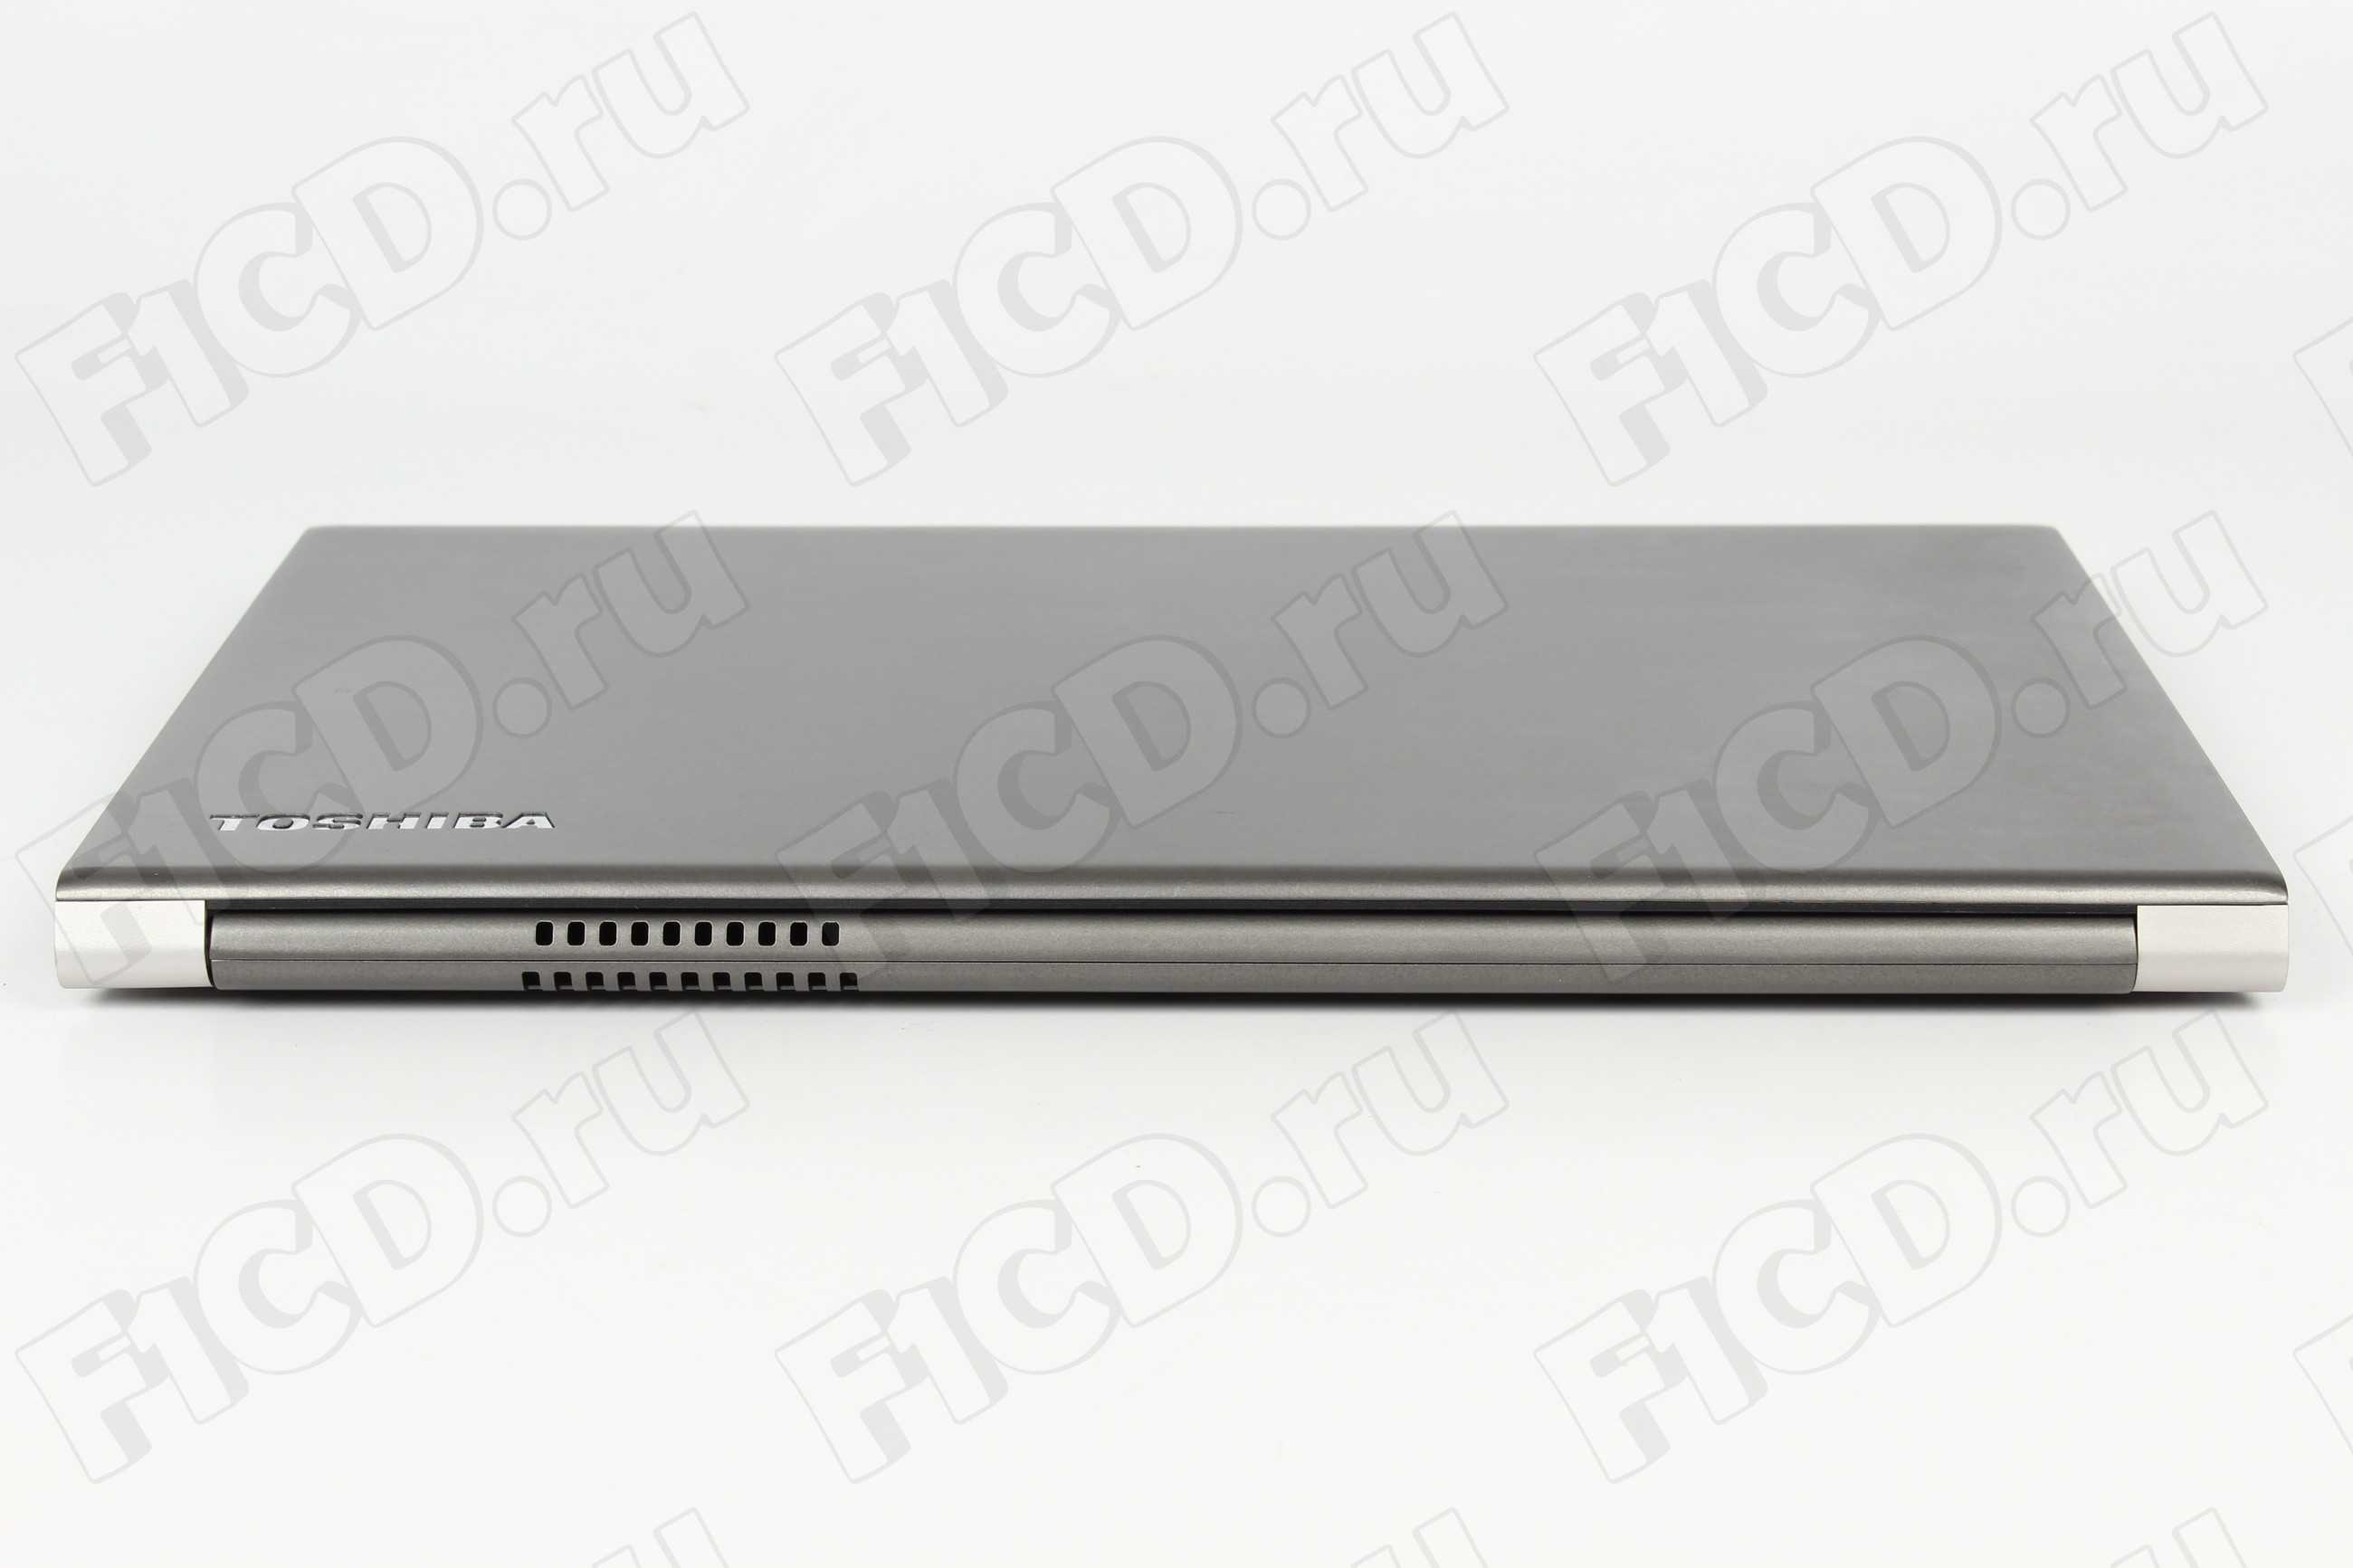 Ноутбук toshiba portege z930-g1s — купить, цена и характеристики, отзывы